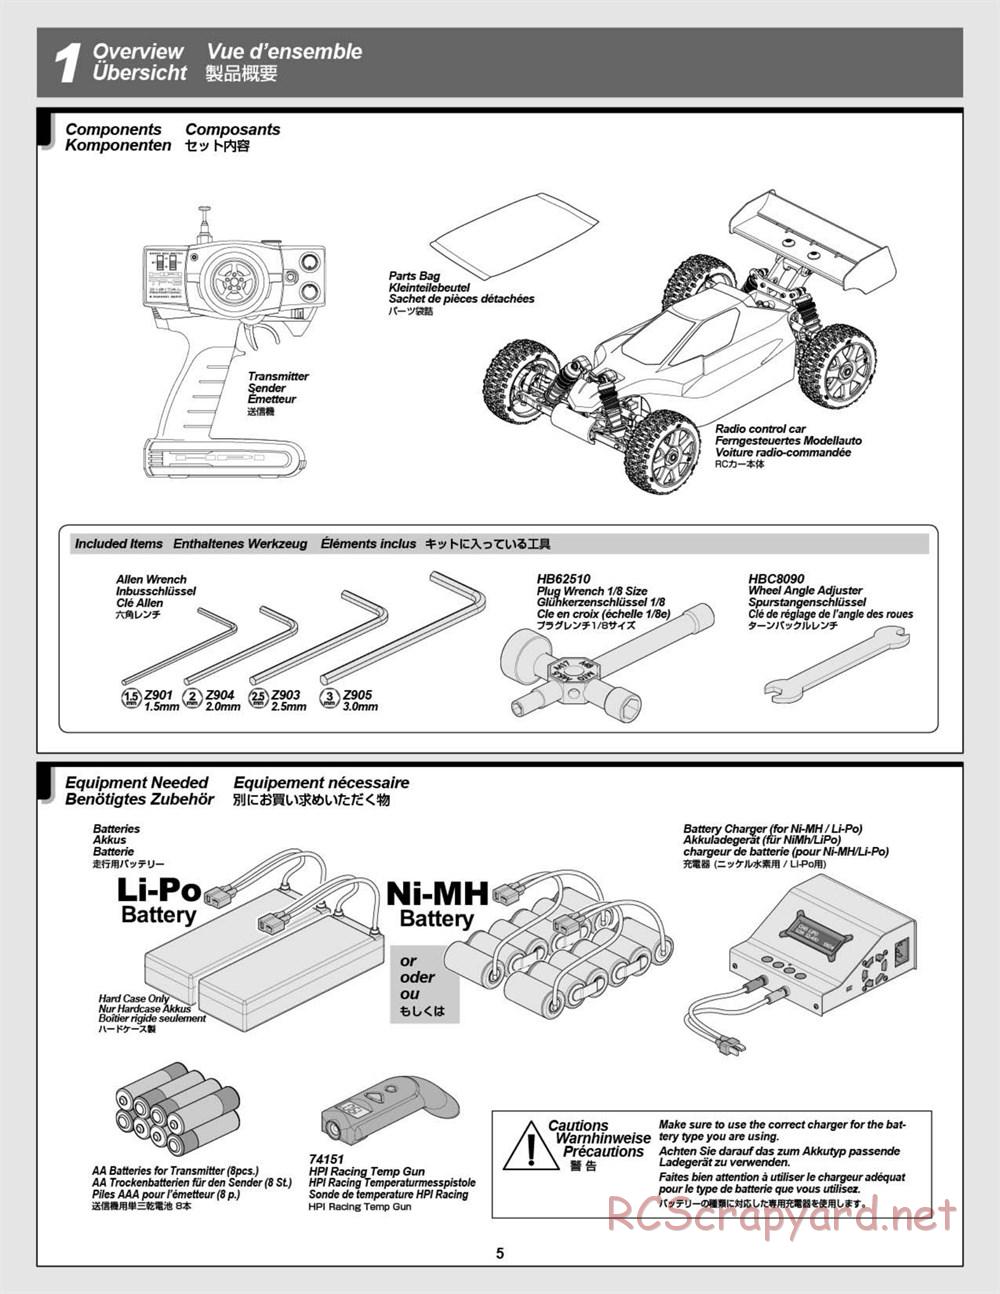 HPI - Vorza Flux HP - Manual - Page 5